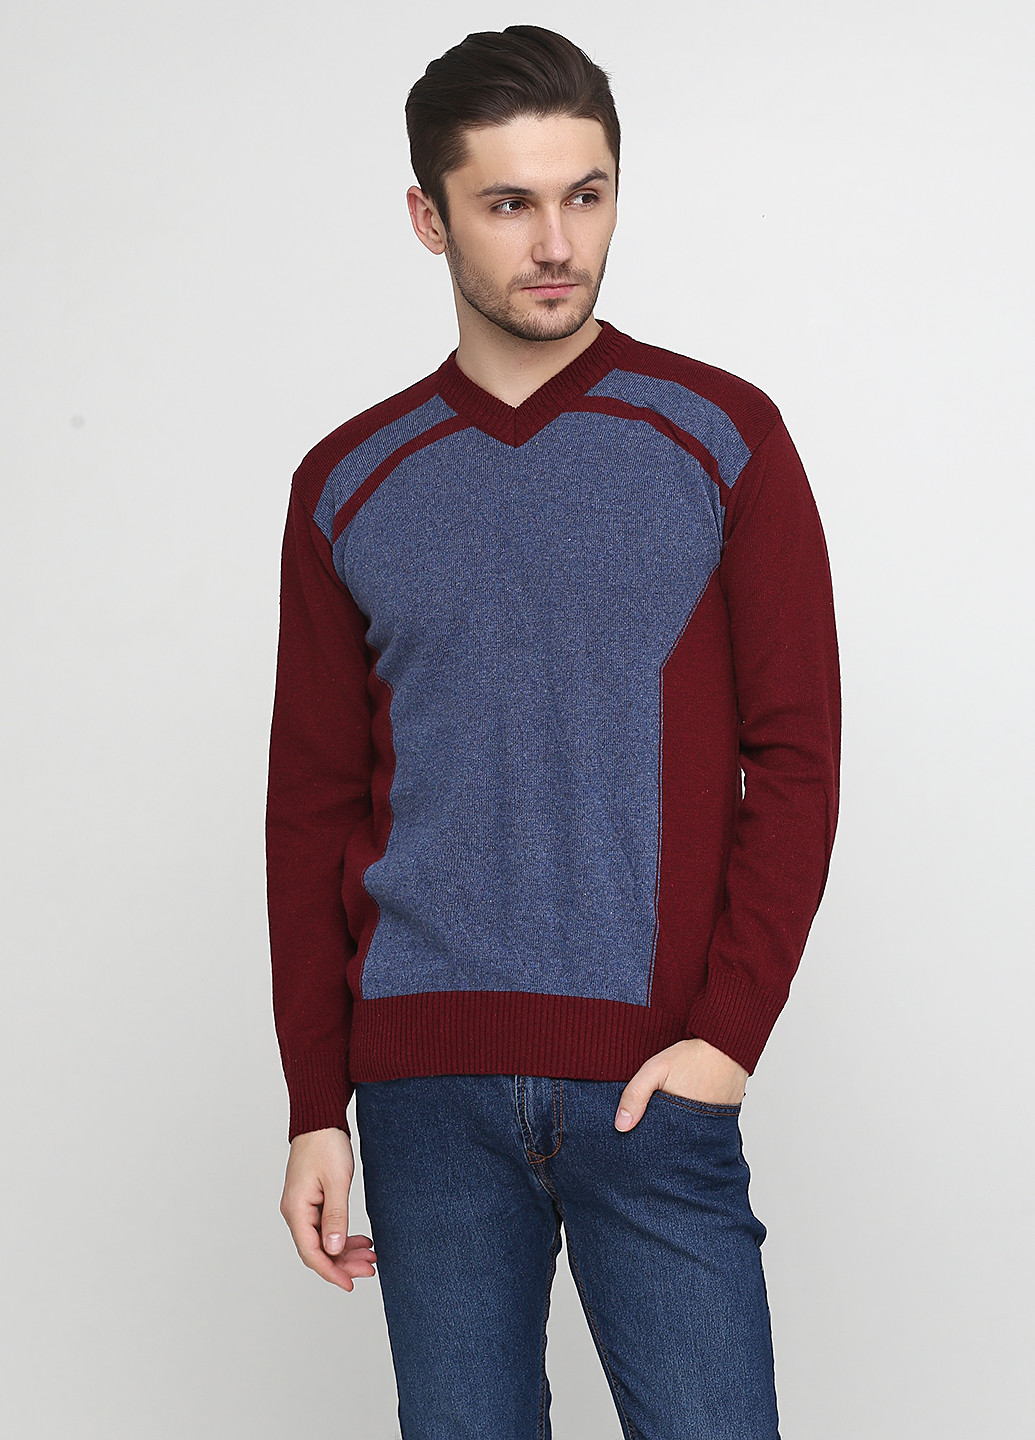 Бордовый демисезонный пуловер пуловер Enbiya